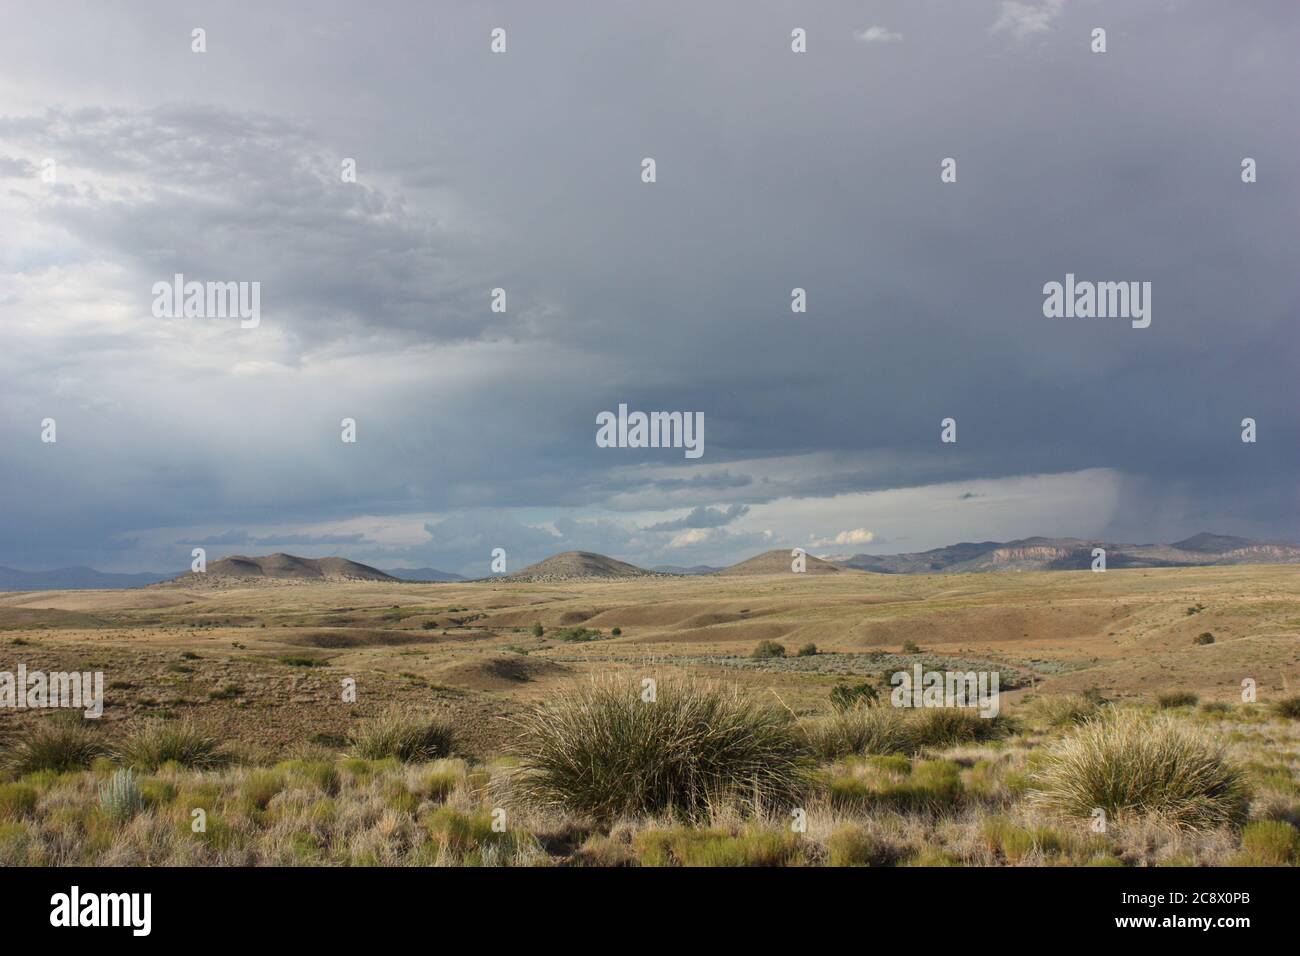 Paysage désertique et spectaculaire avec des prairies arides, des montagnes lointaines et des nuages de pluie sombres et orageux Banque D'Images